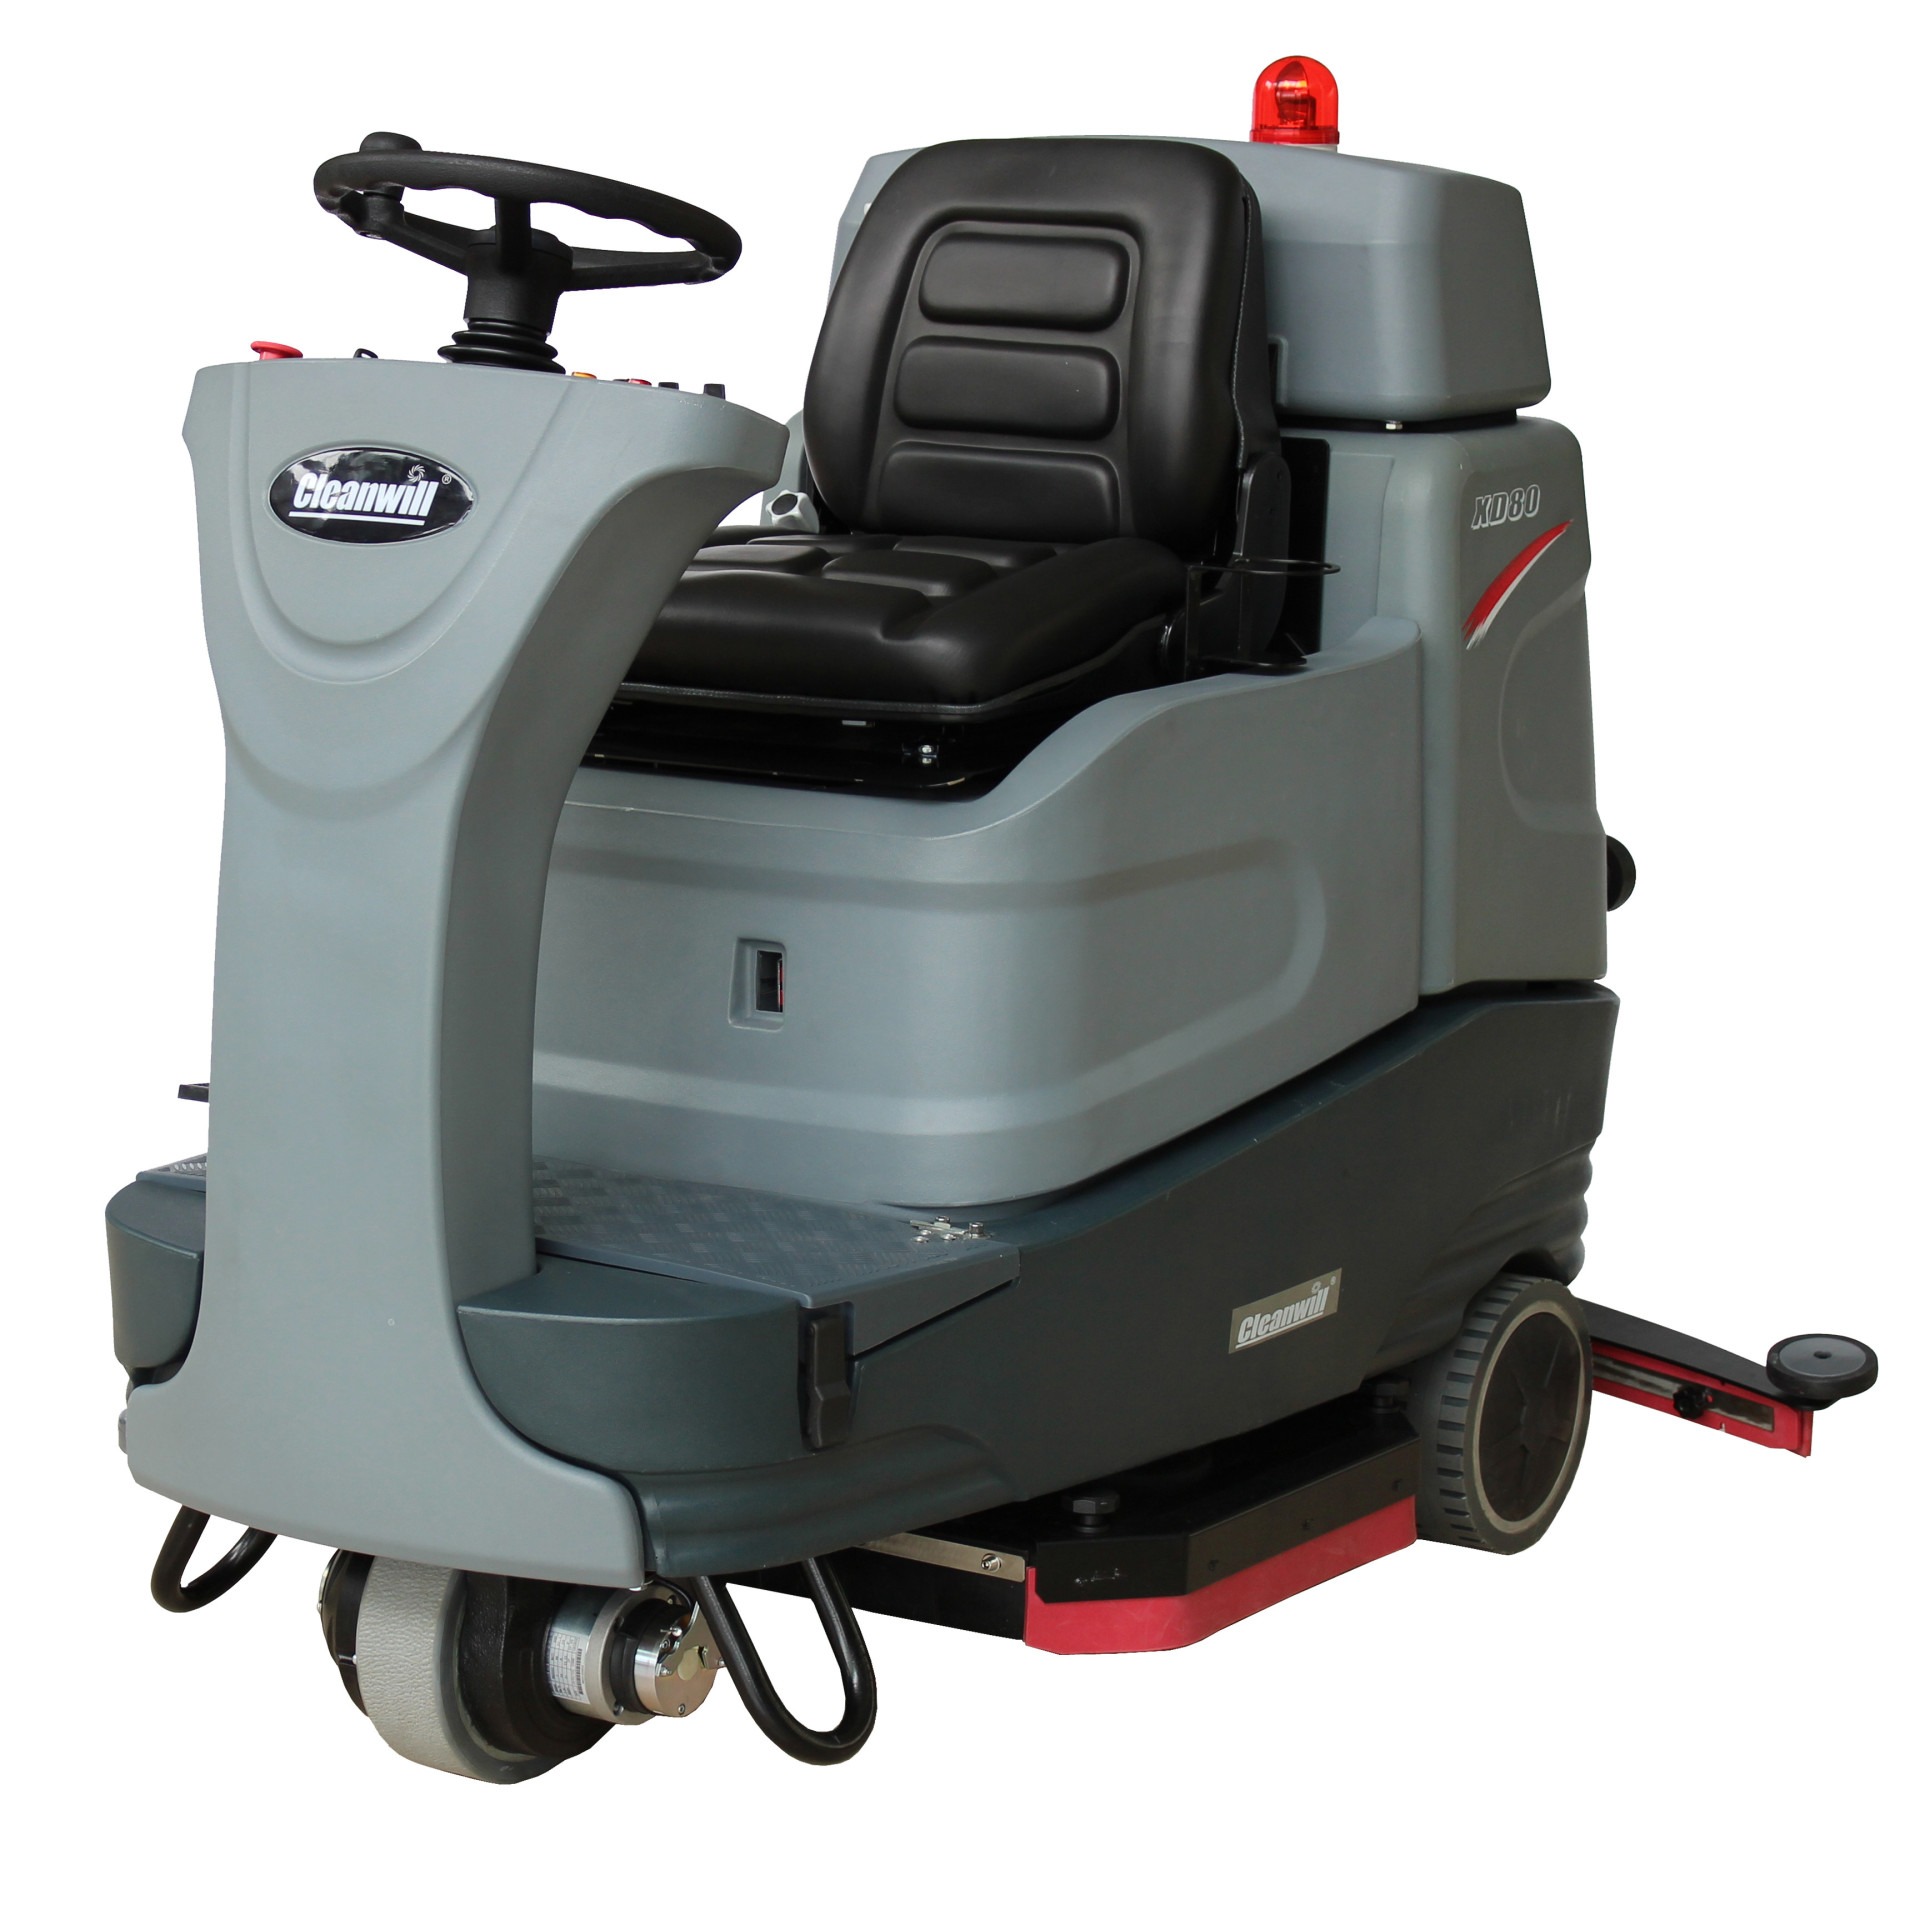 驾驶式洗地机 擦地车 双电机刷盘  大容量污水箱拖地车 cleanwill/克力威 XD80